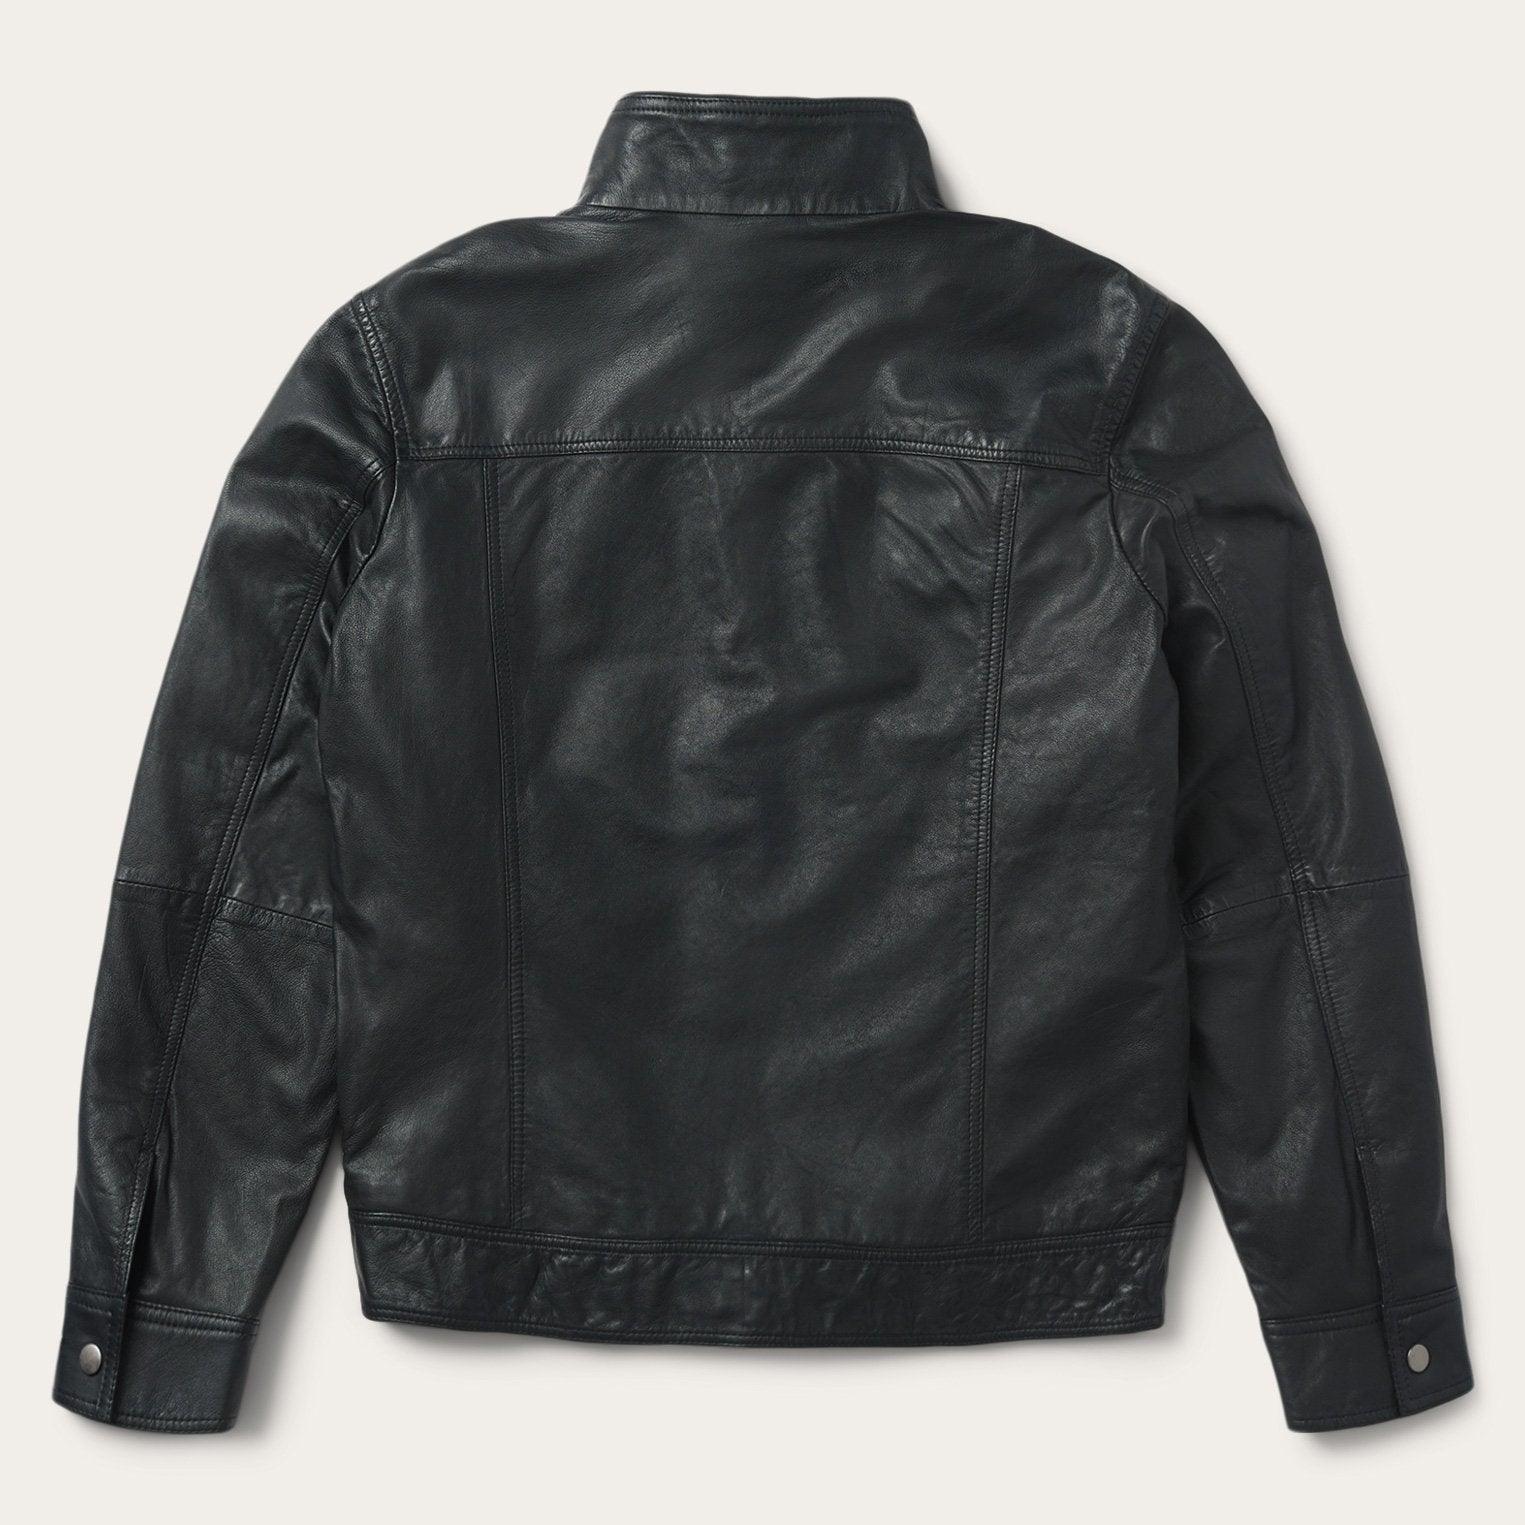 Stetson Black Leather Jacket - Flyclothing LLC